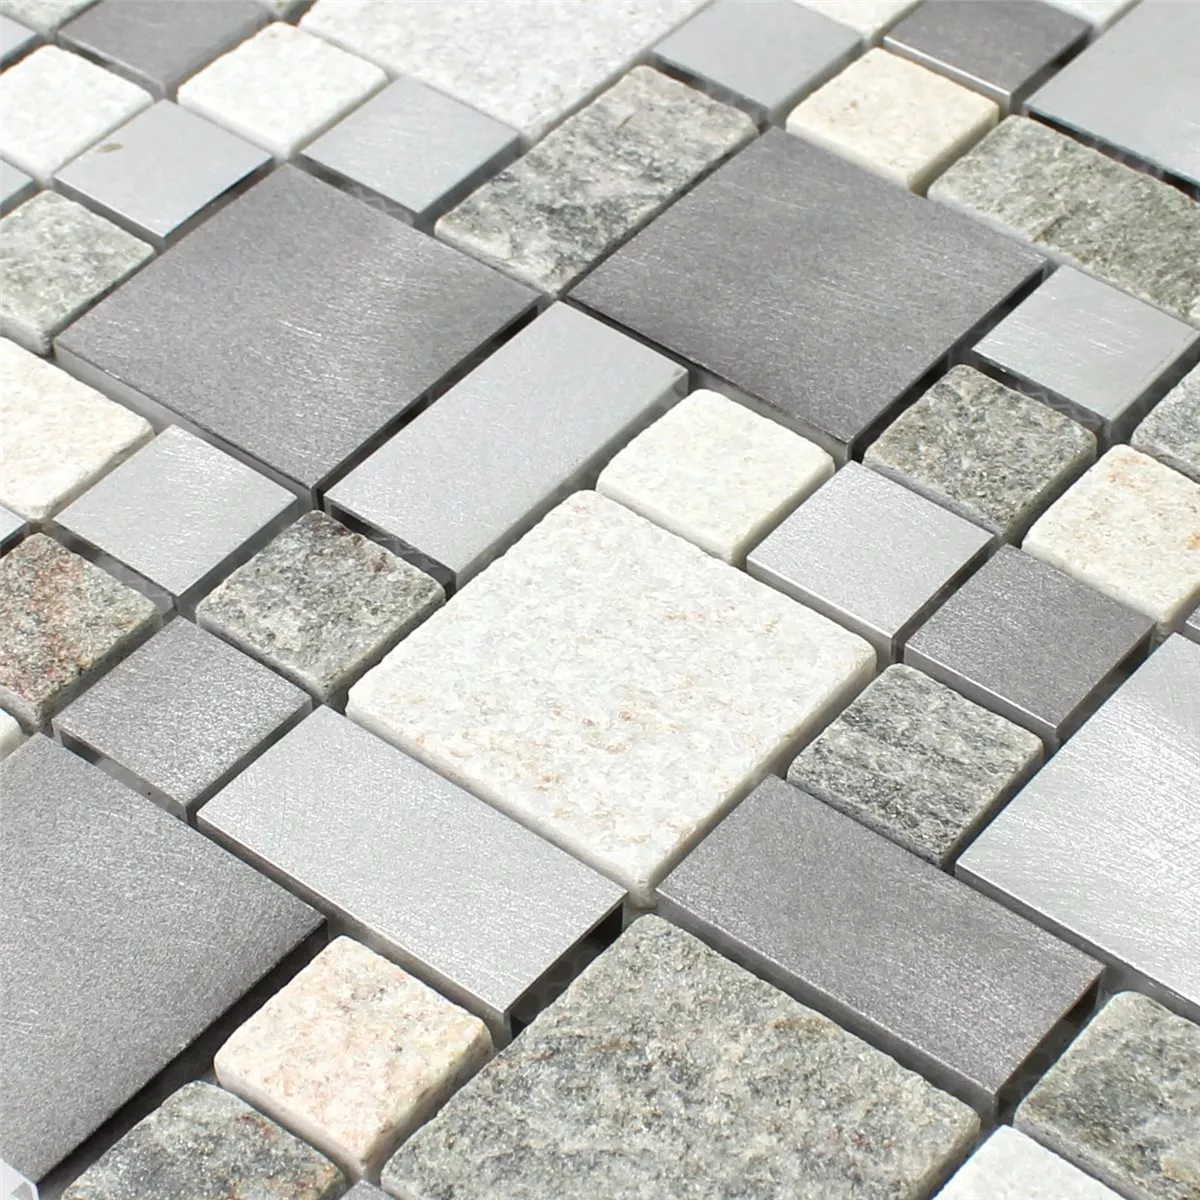 Sample Mosaic Tiles Quartzite Aluminium Metal Mix